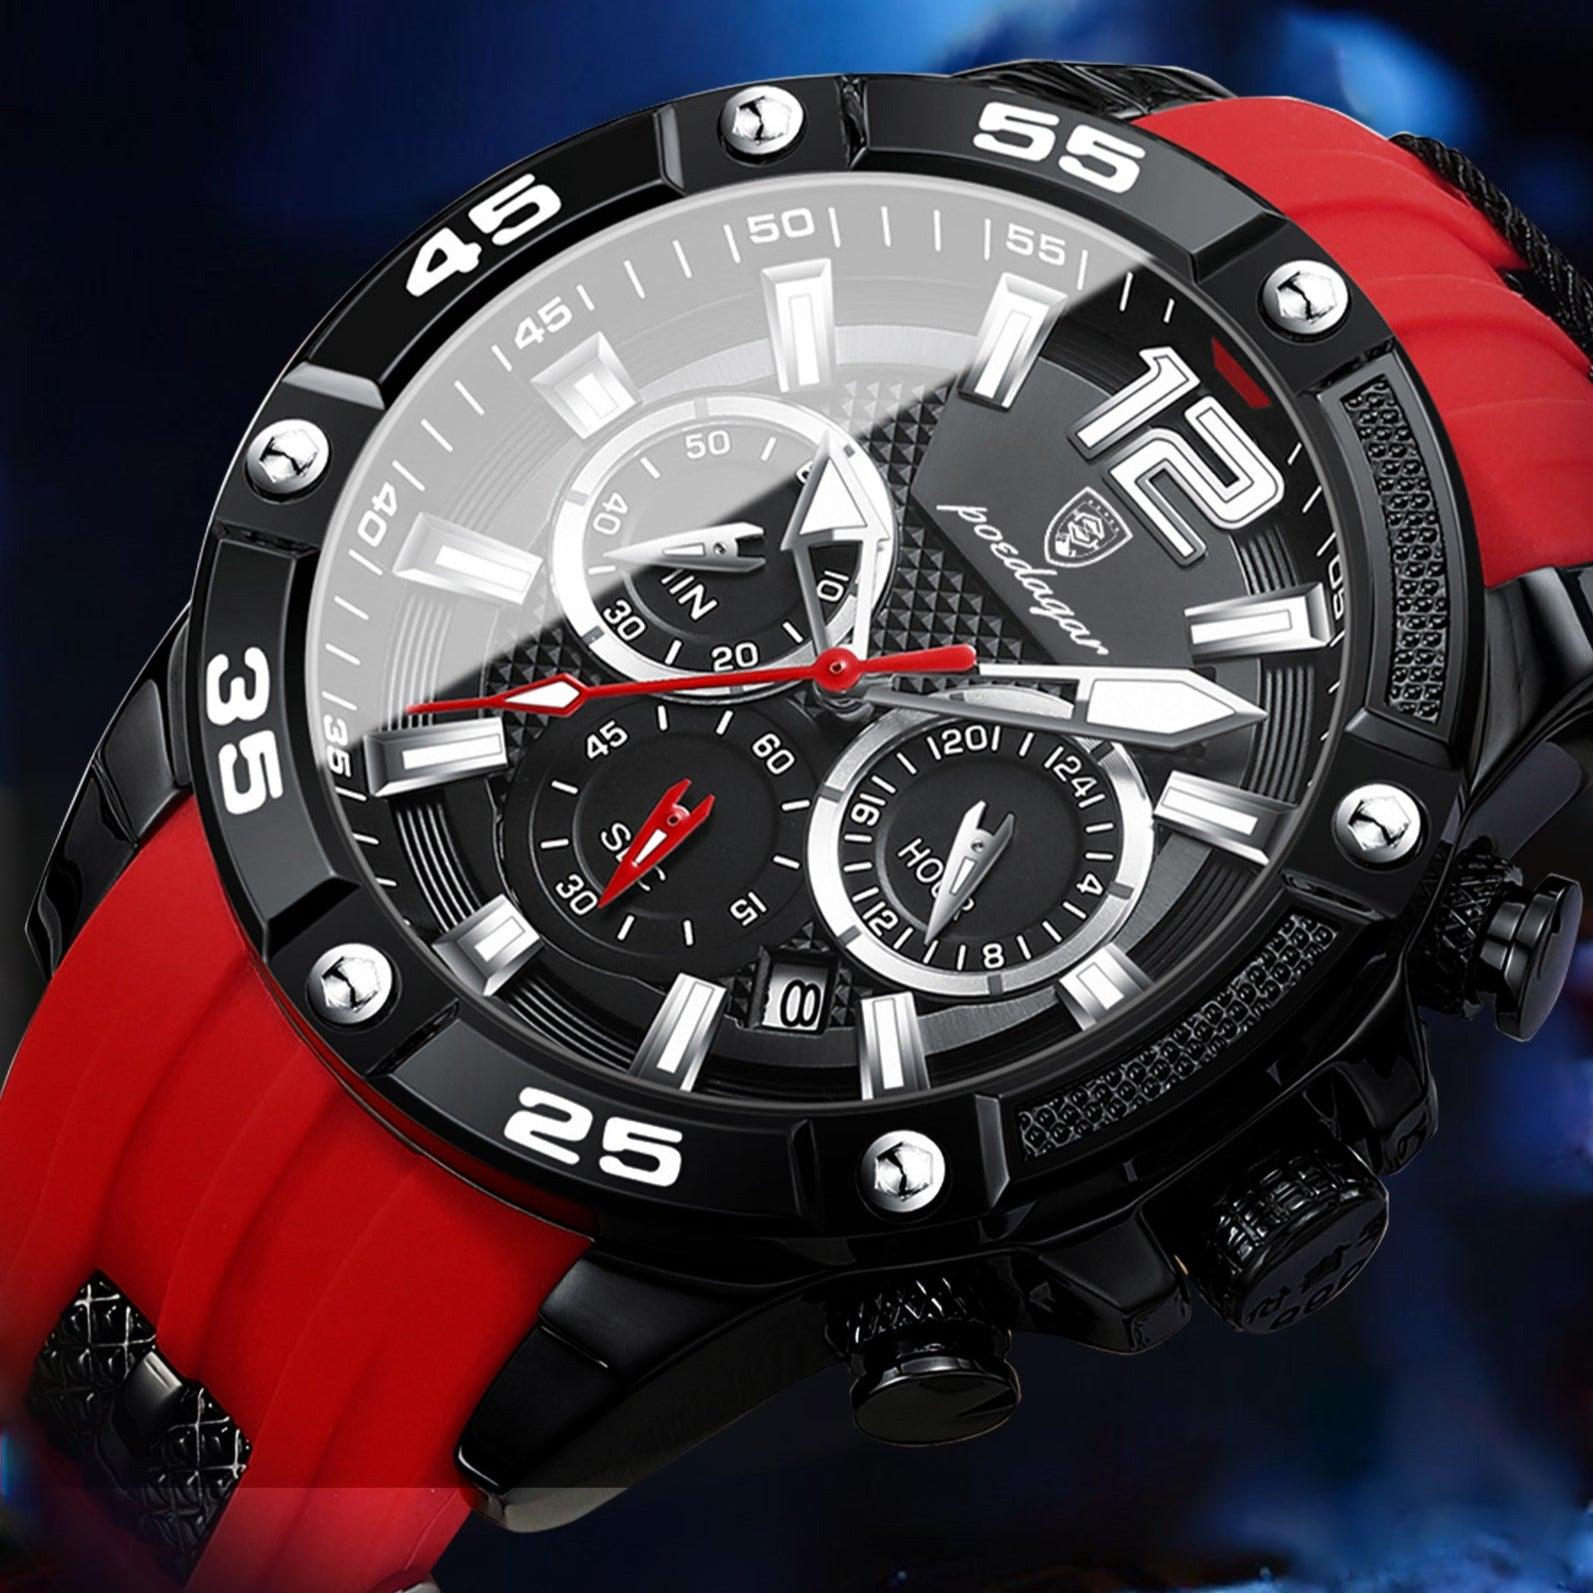 Relógio Vellod R49 - Alfa Wear - pulseira de borracha, pulseira de silicone, relógio, relógio de couro, relógio de metal, relógio esportivo, relógio masculino